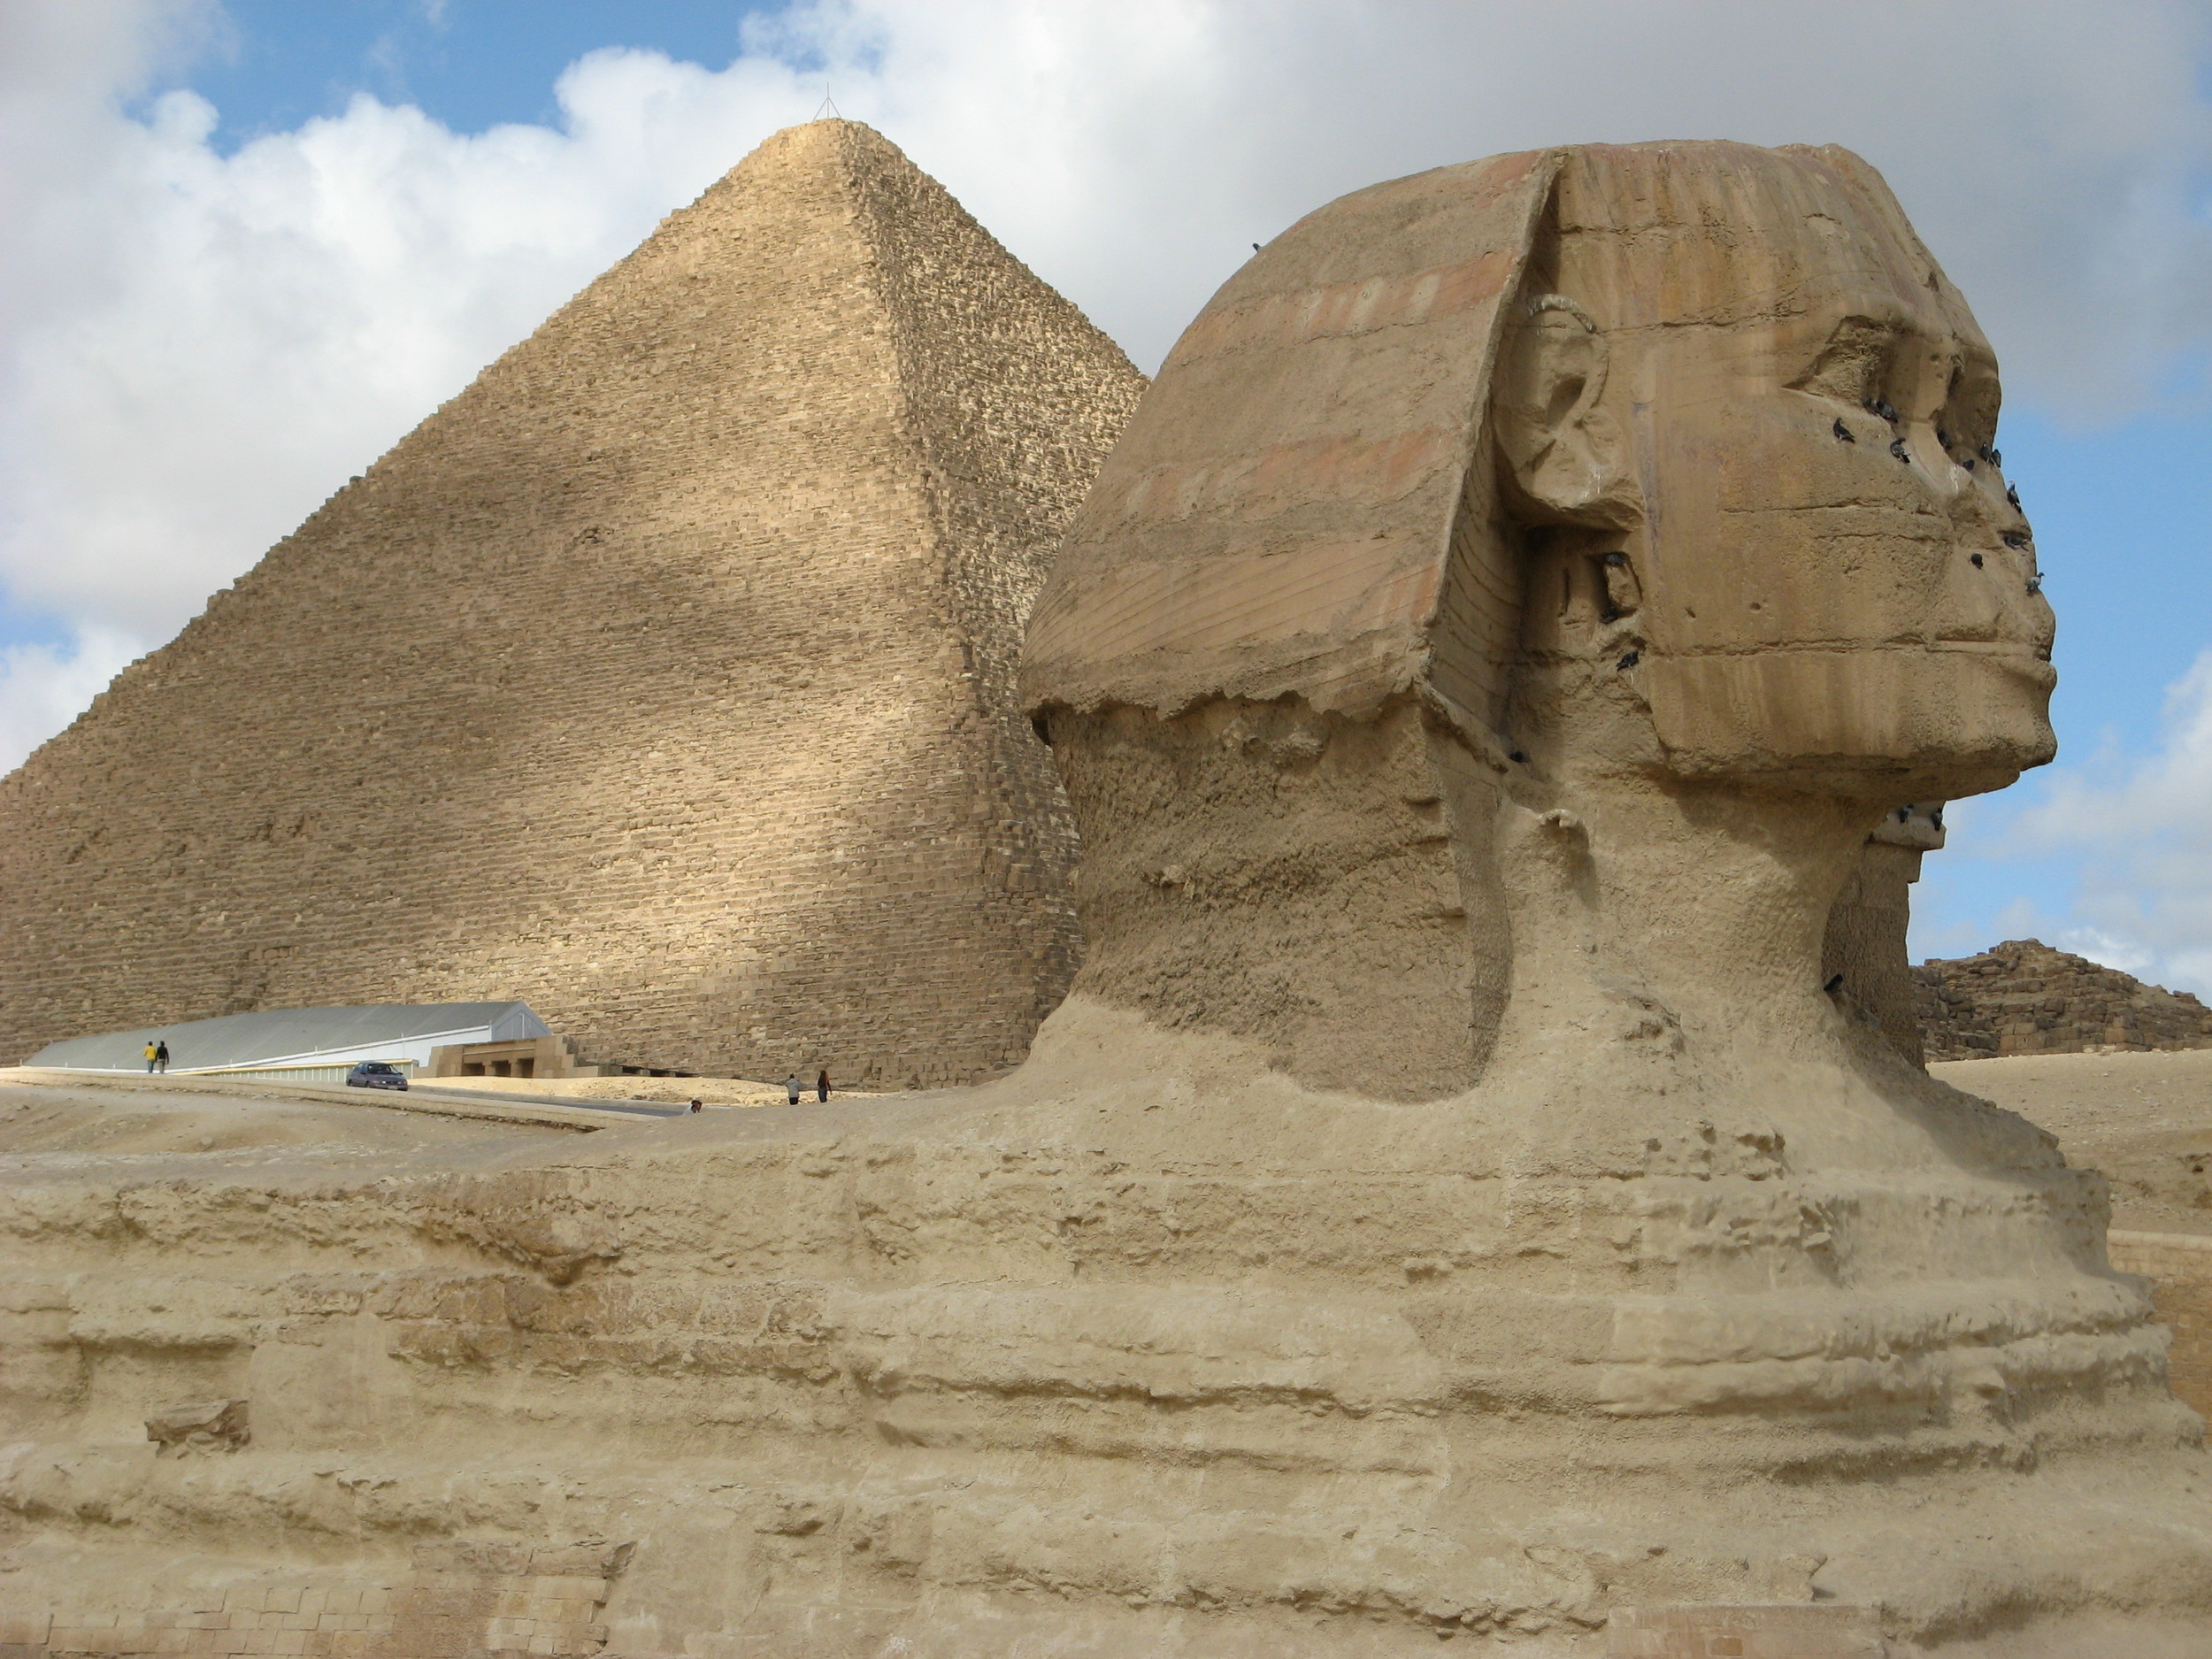  The Sphinx, Cairo 